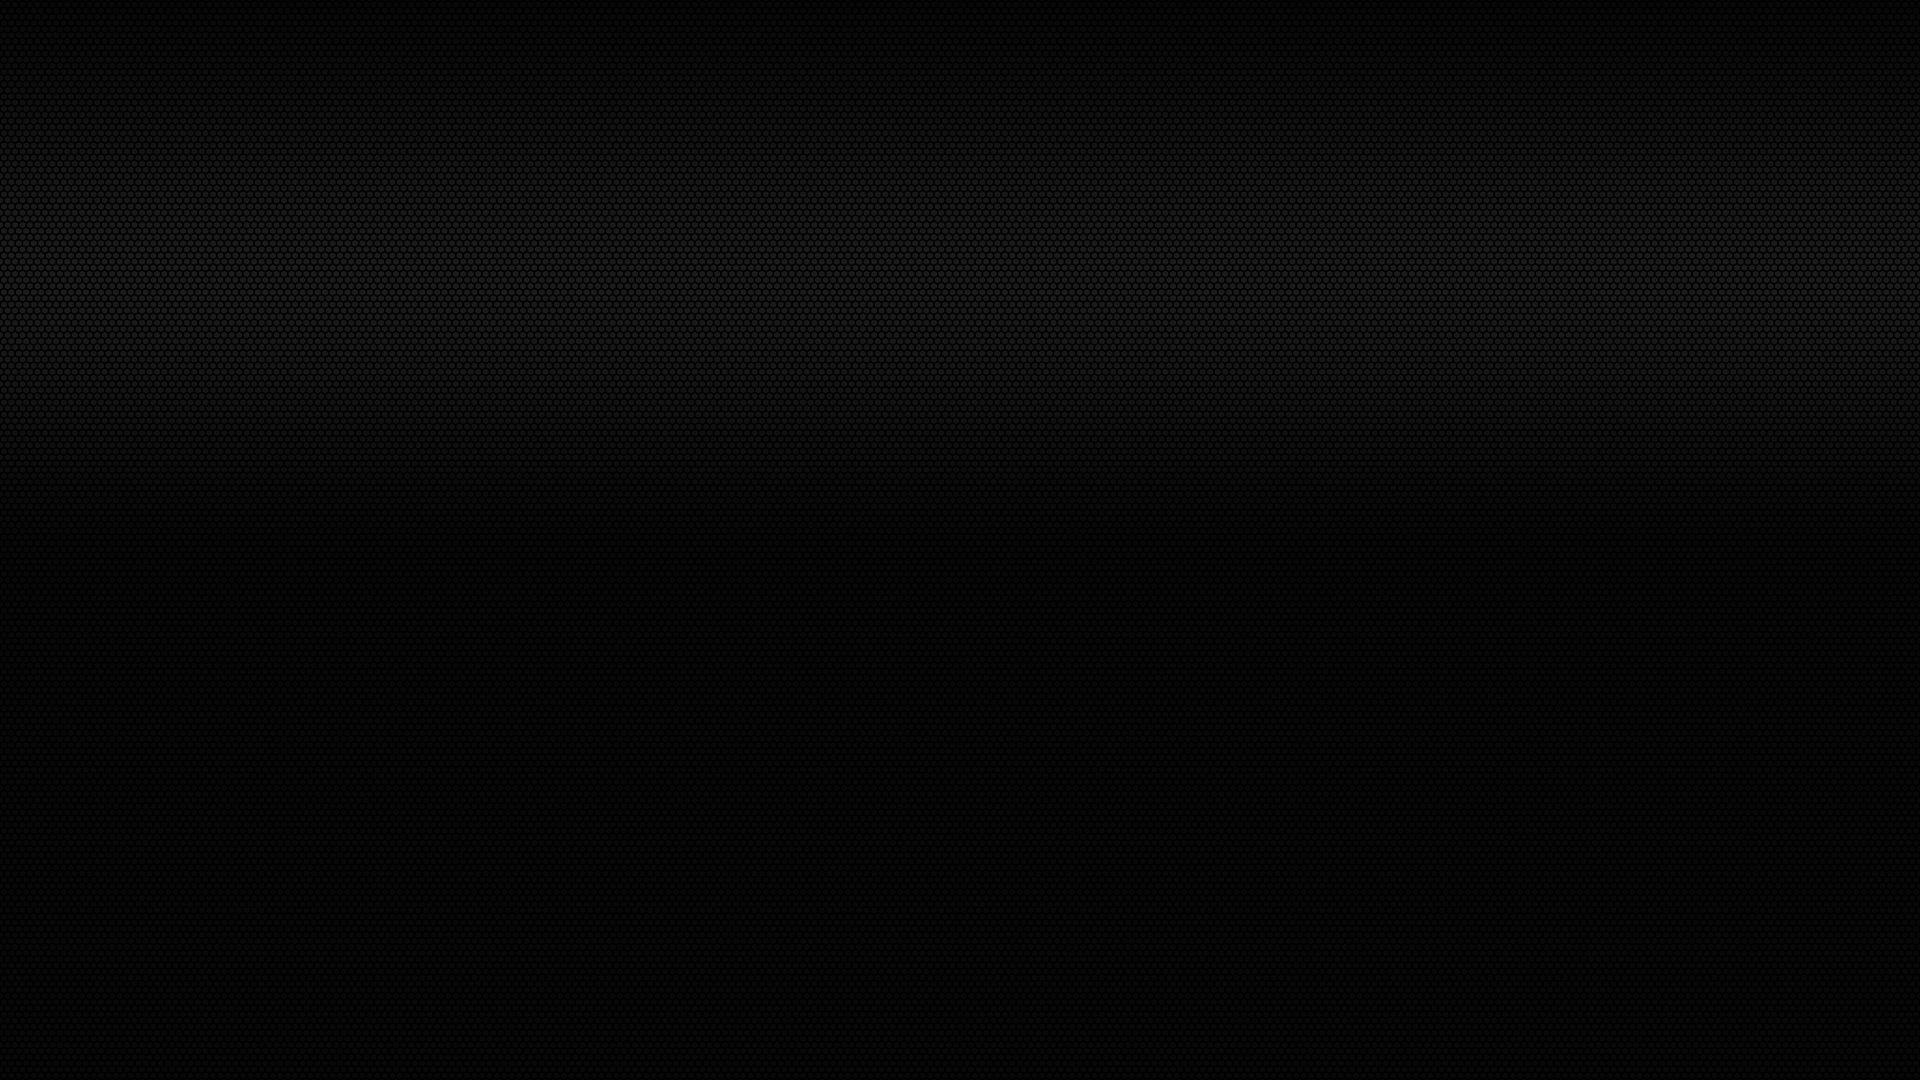 Plain Black Wallpaper Desktop • dodskypict. Solid color background, Blazing needles, Daltile